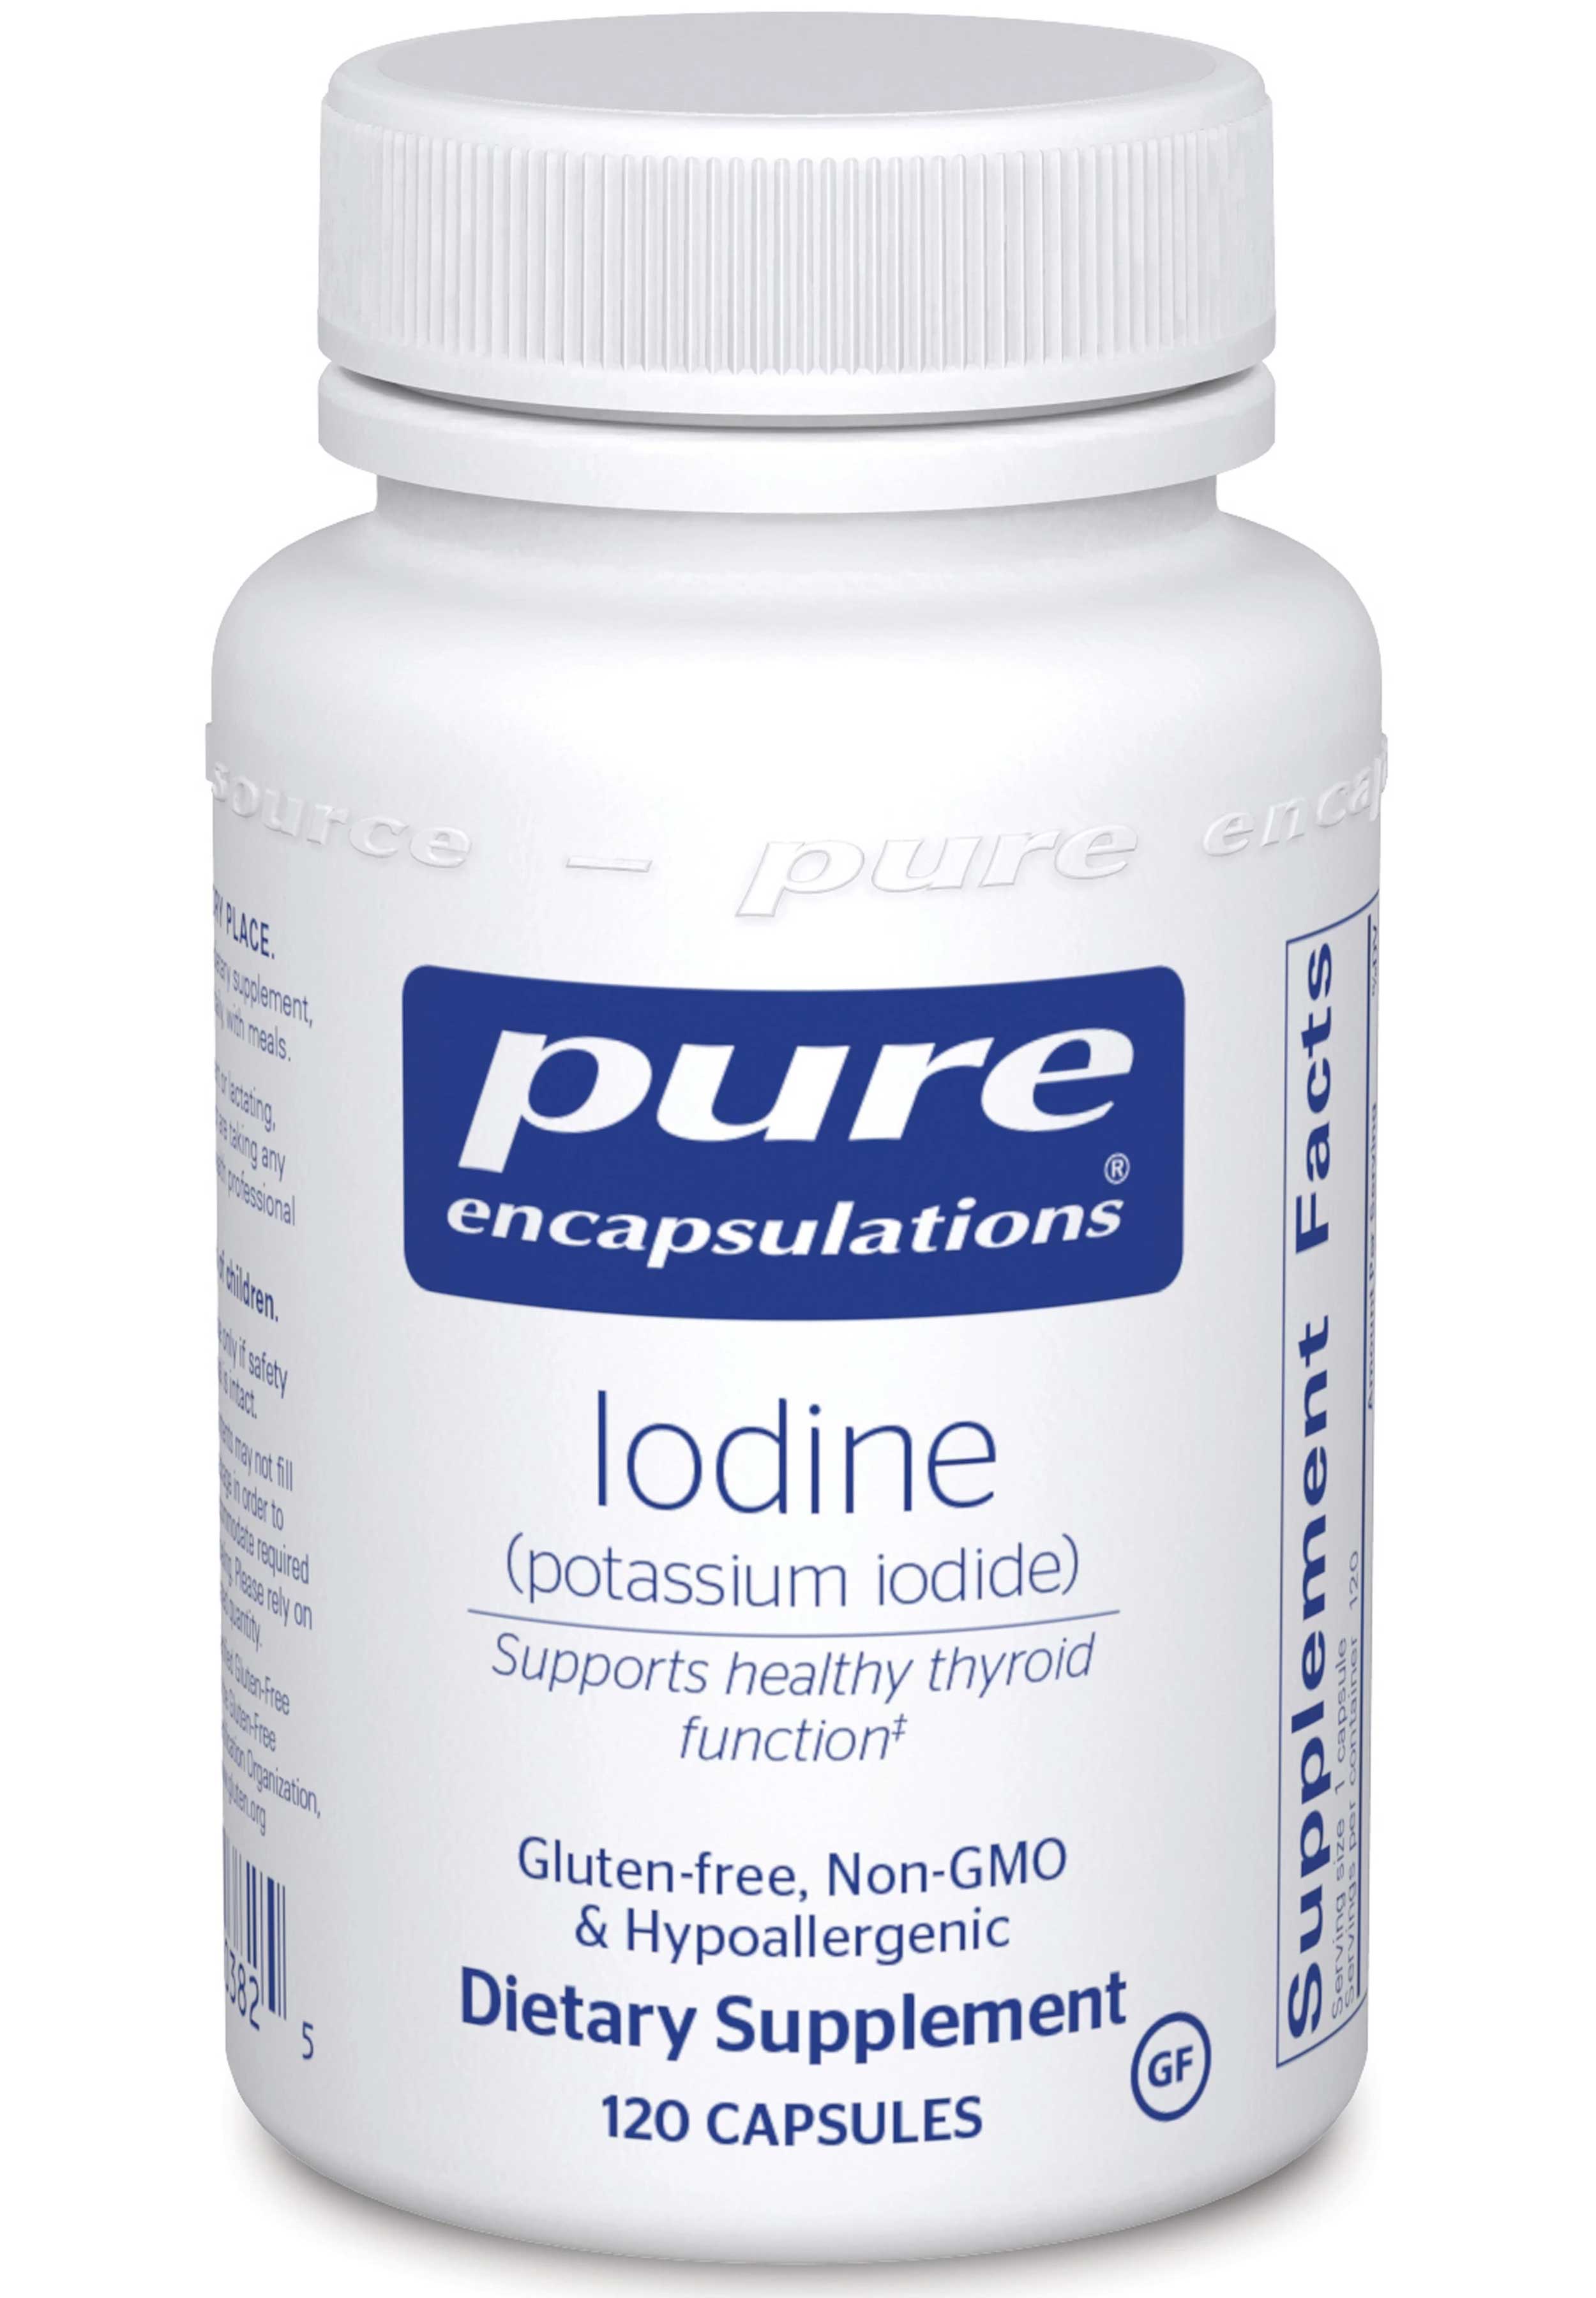 Pure Encapsulations Iodine (potassium iodide)